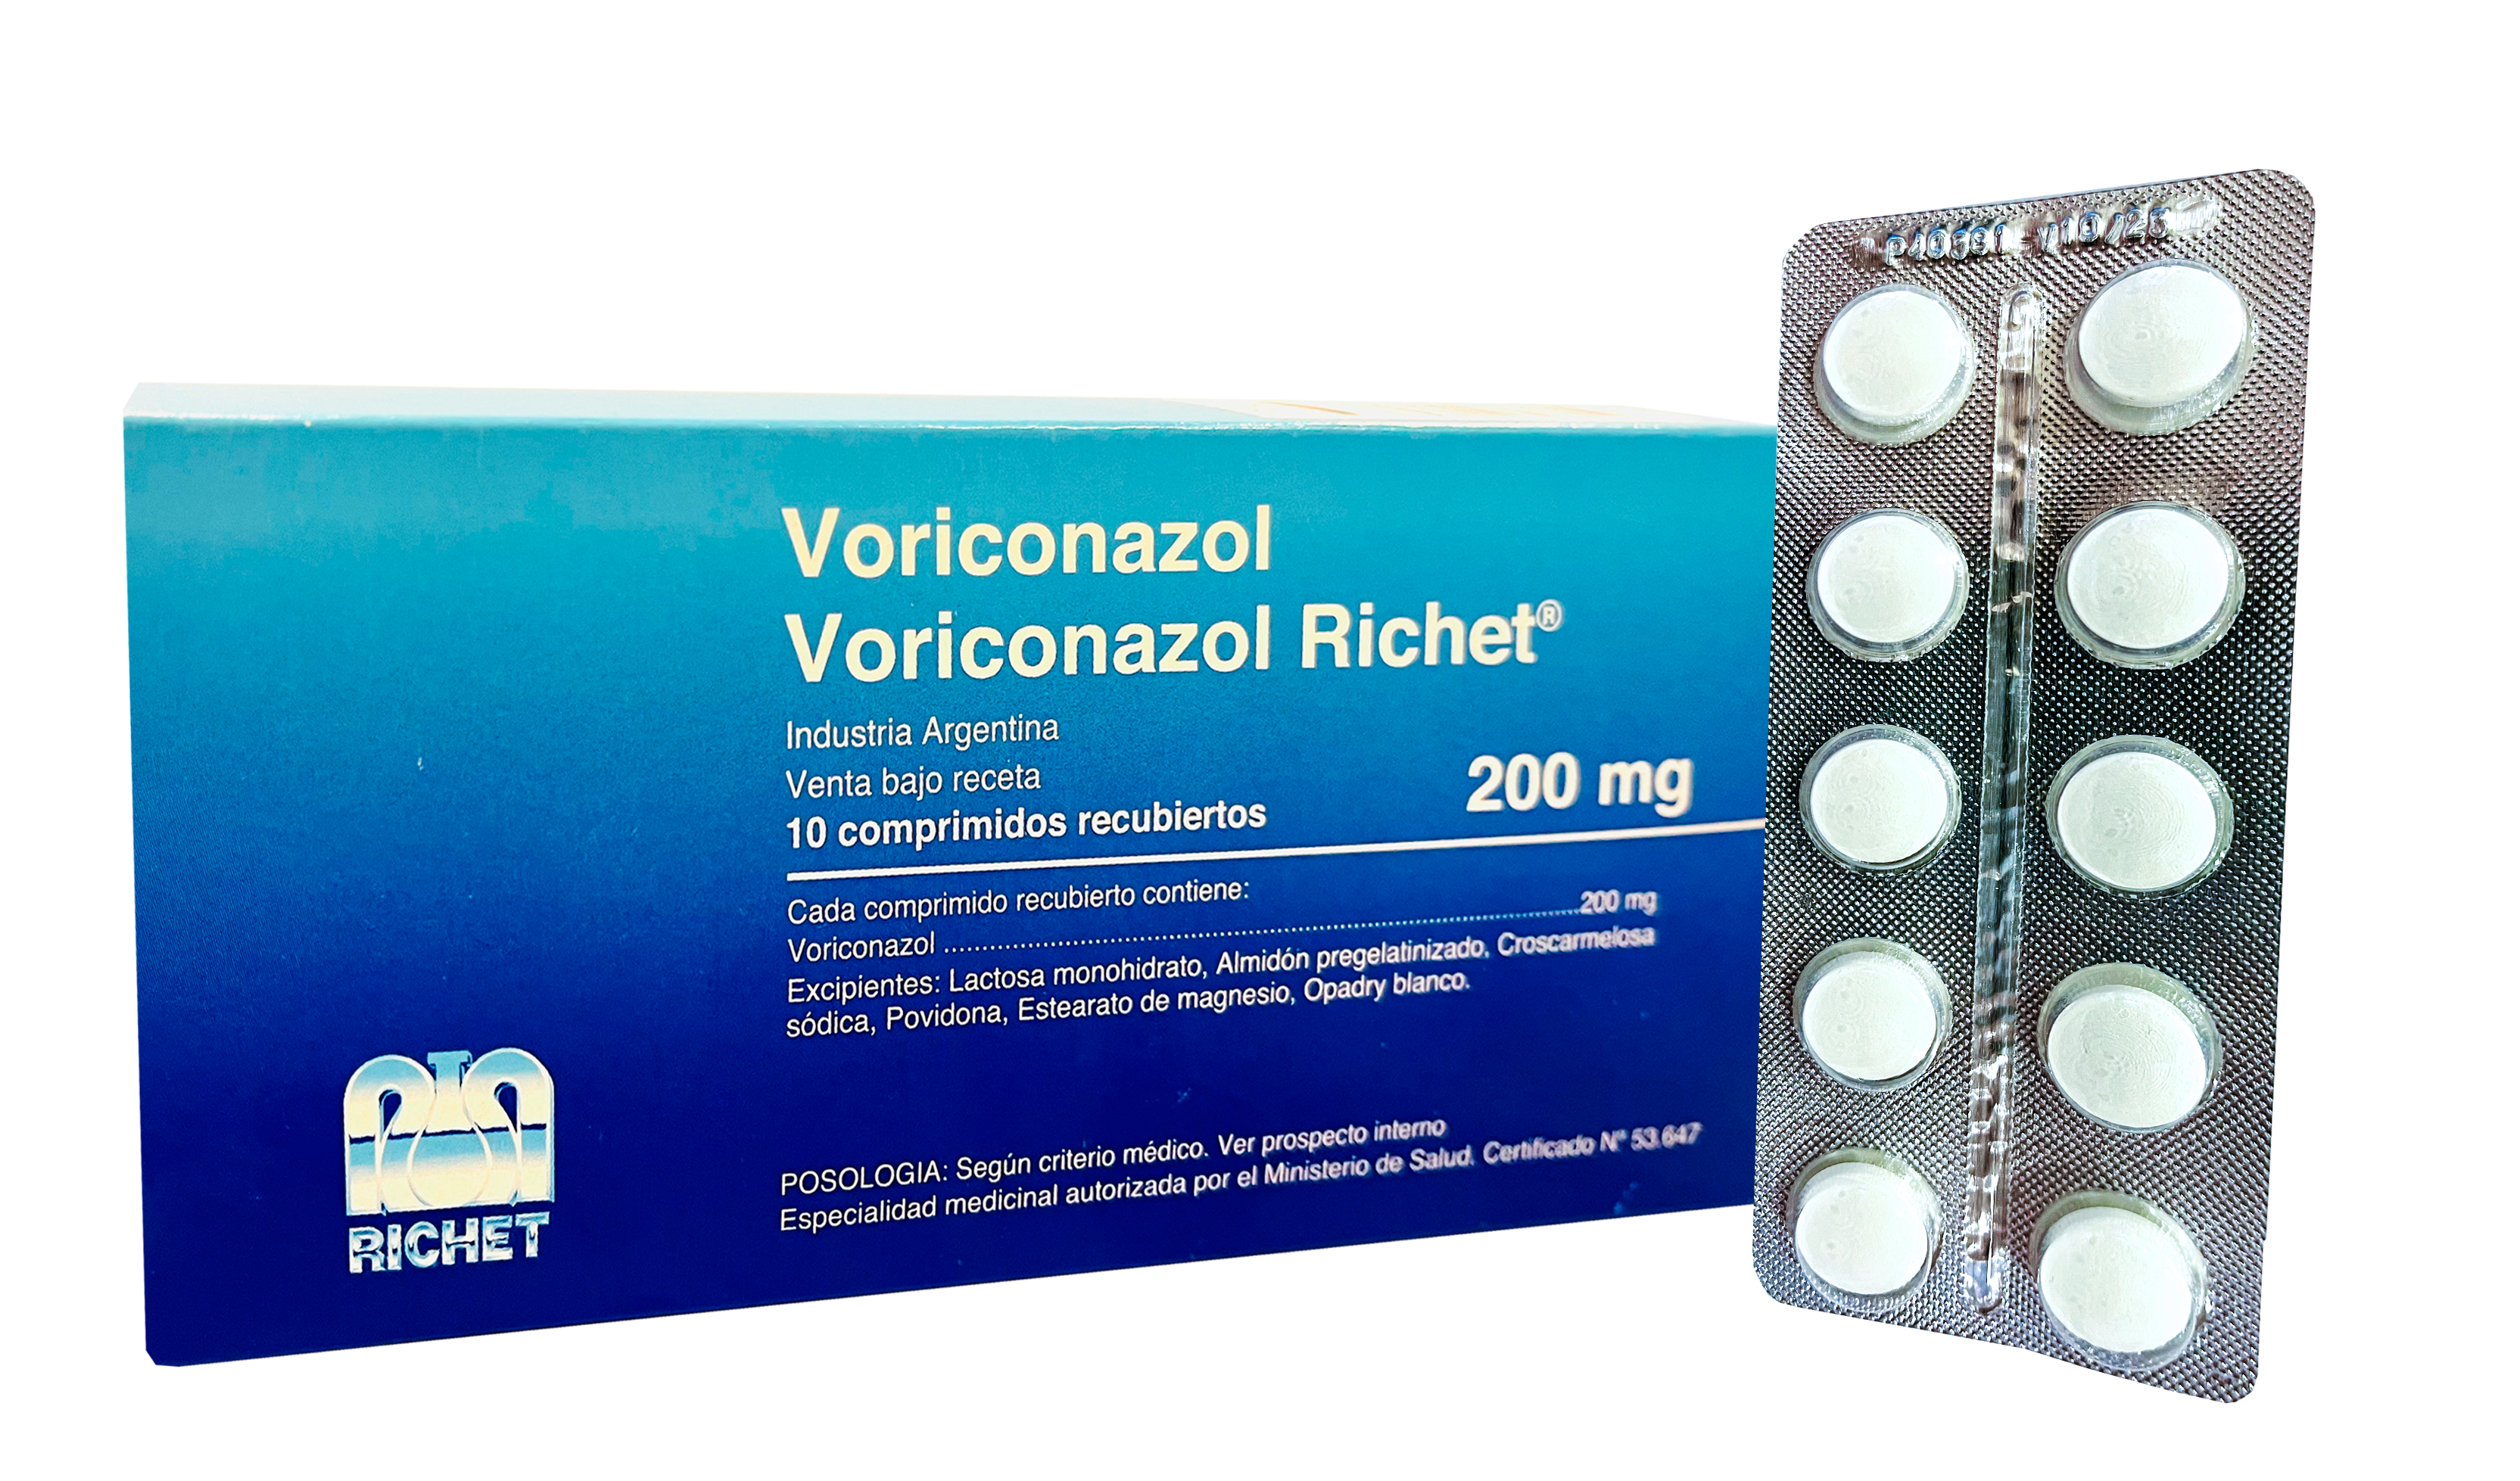 Voriconazol Richet 200 mg